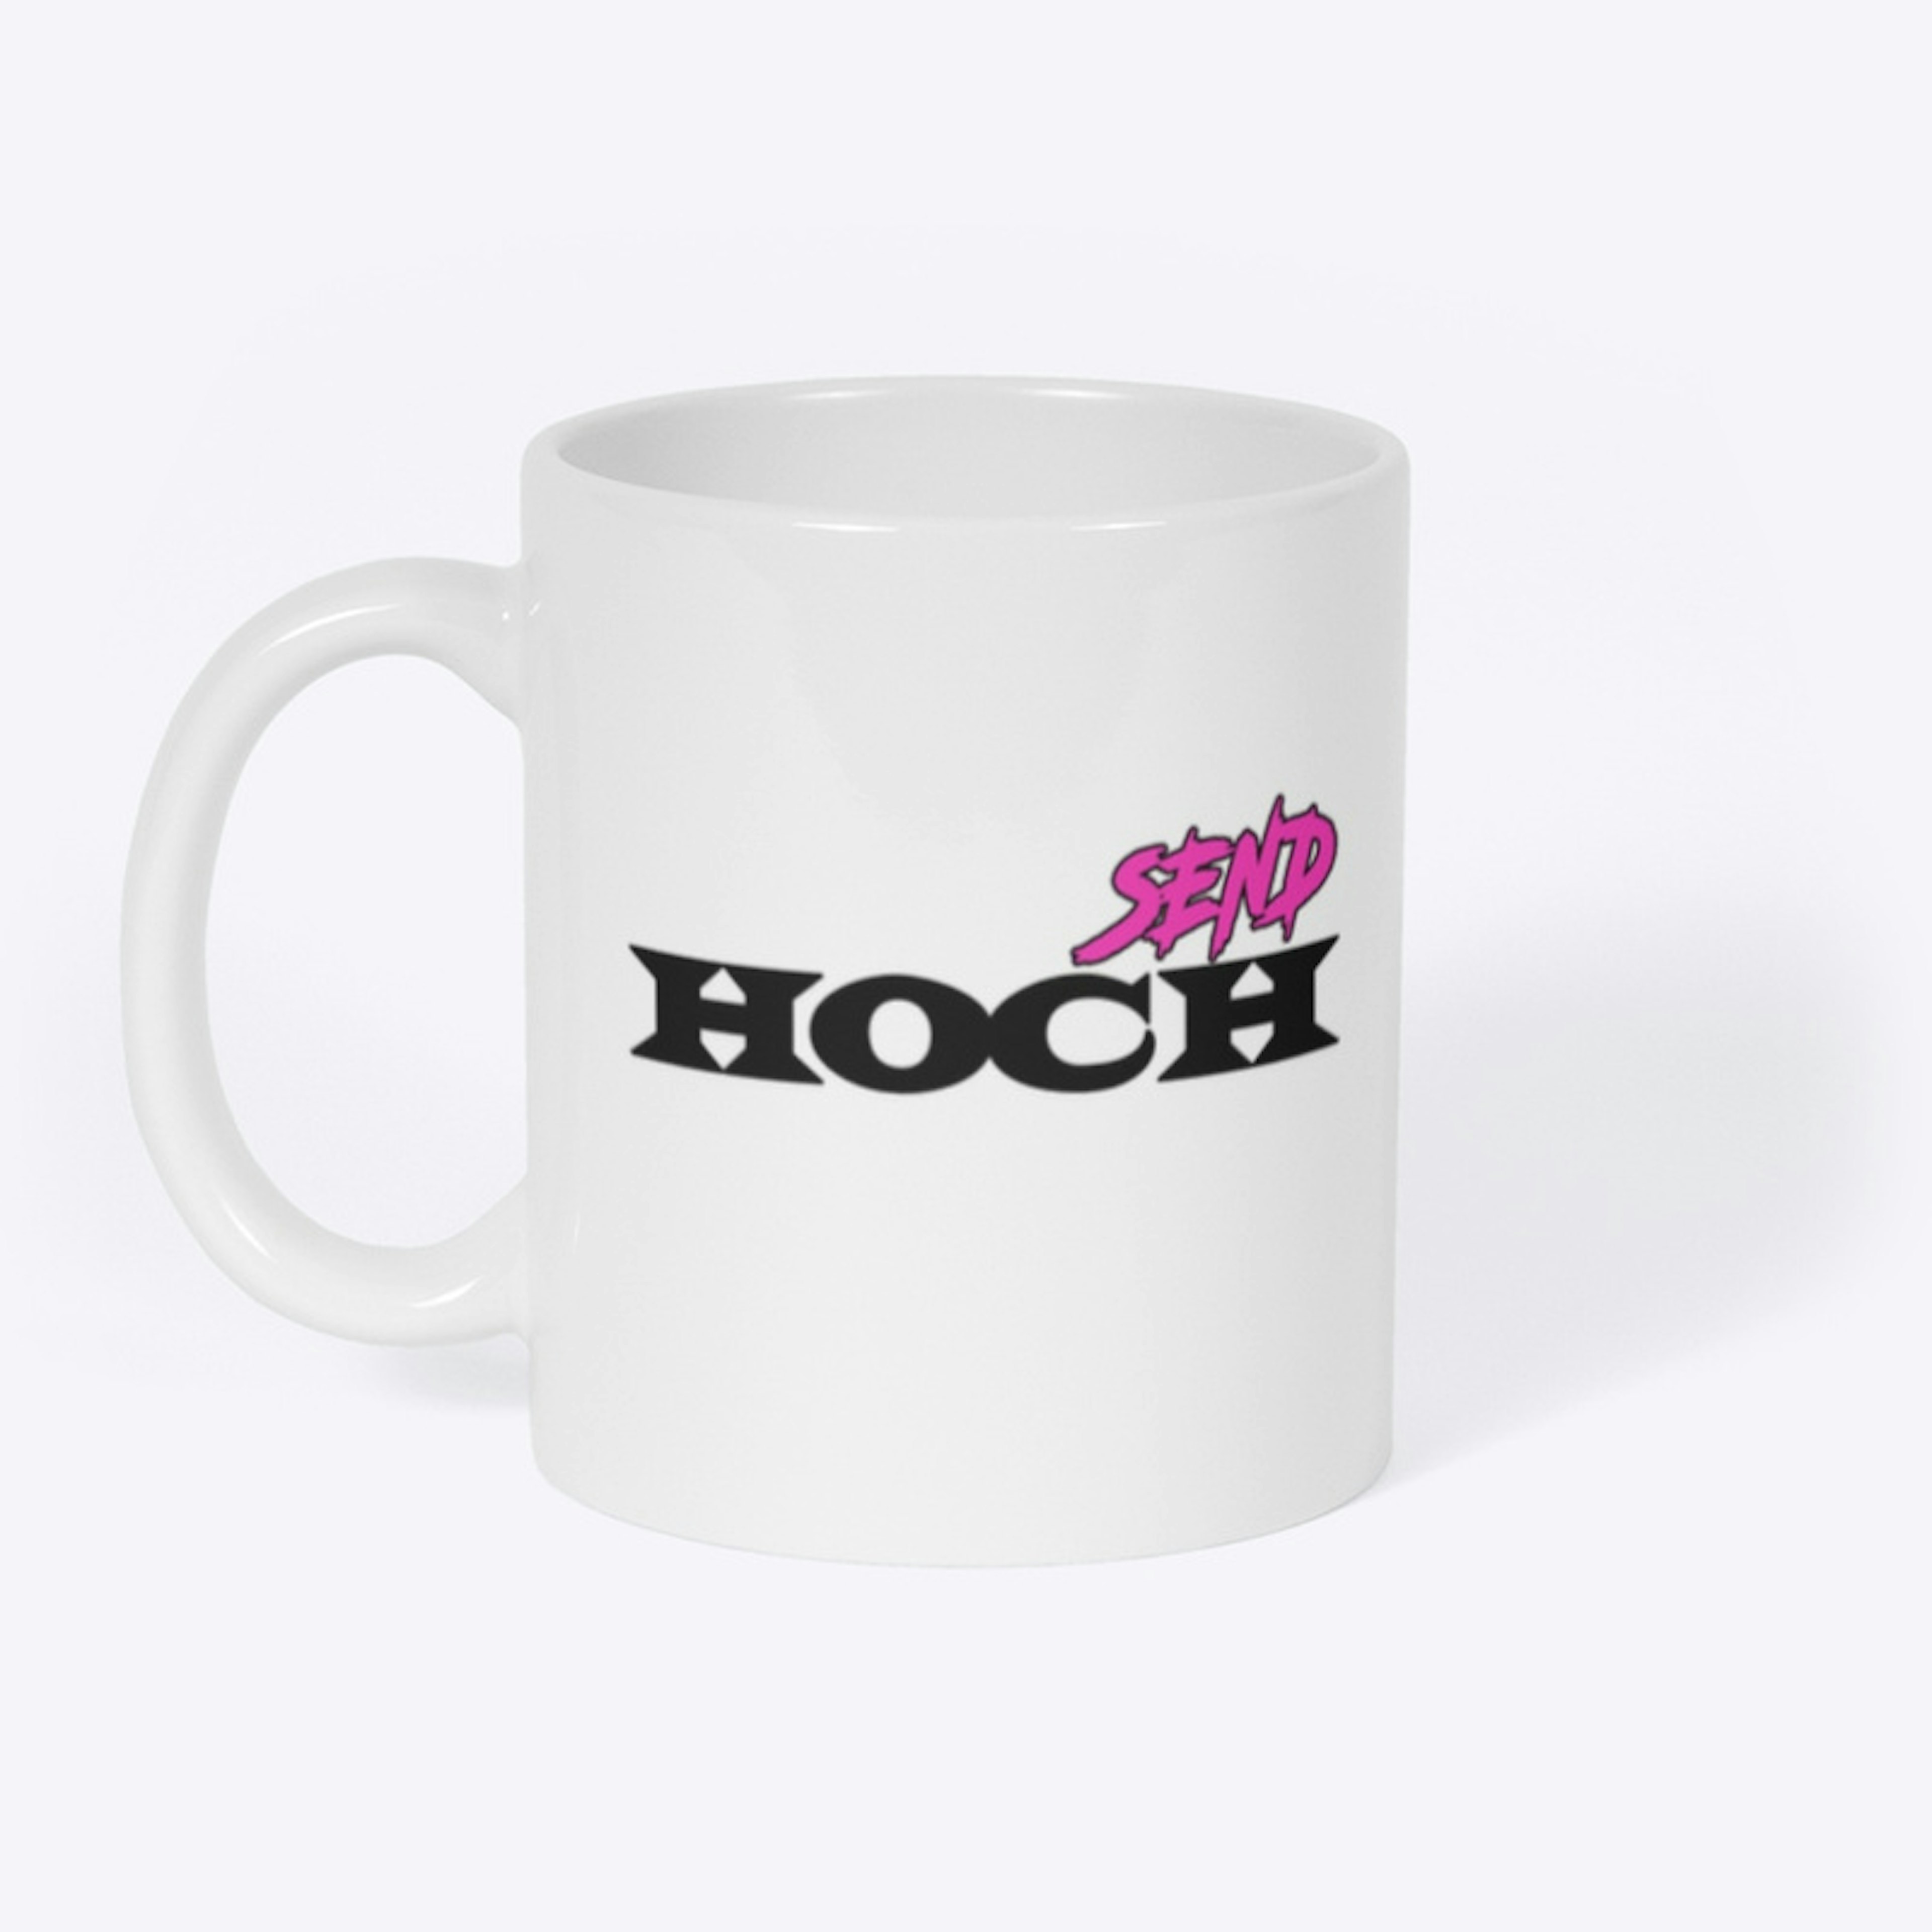 Send Hoch Mug